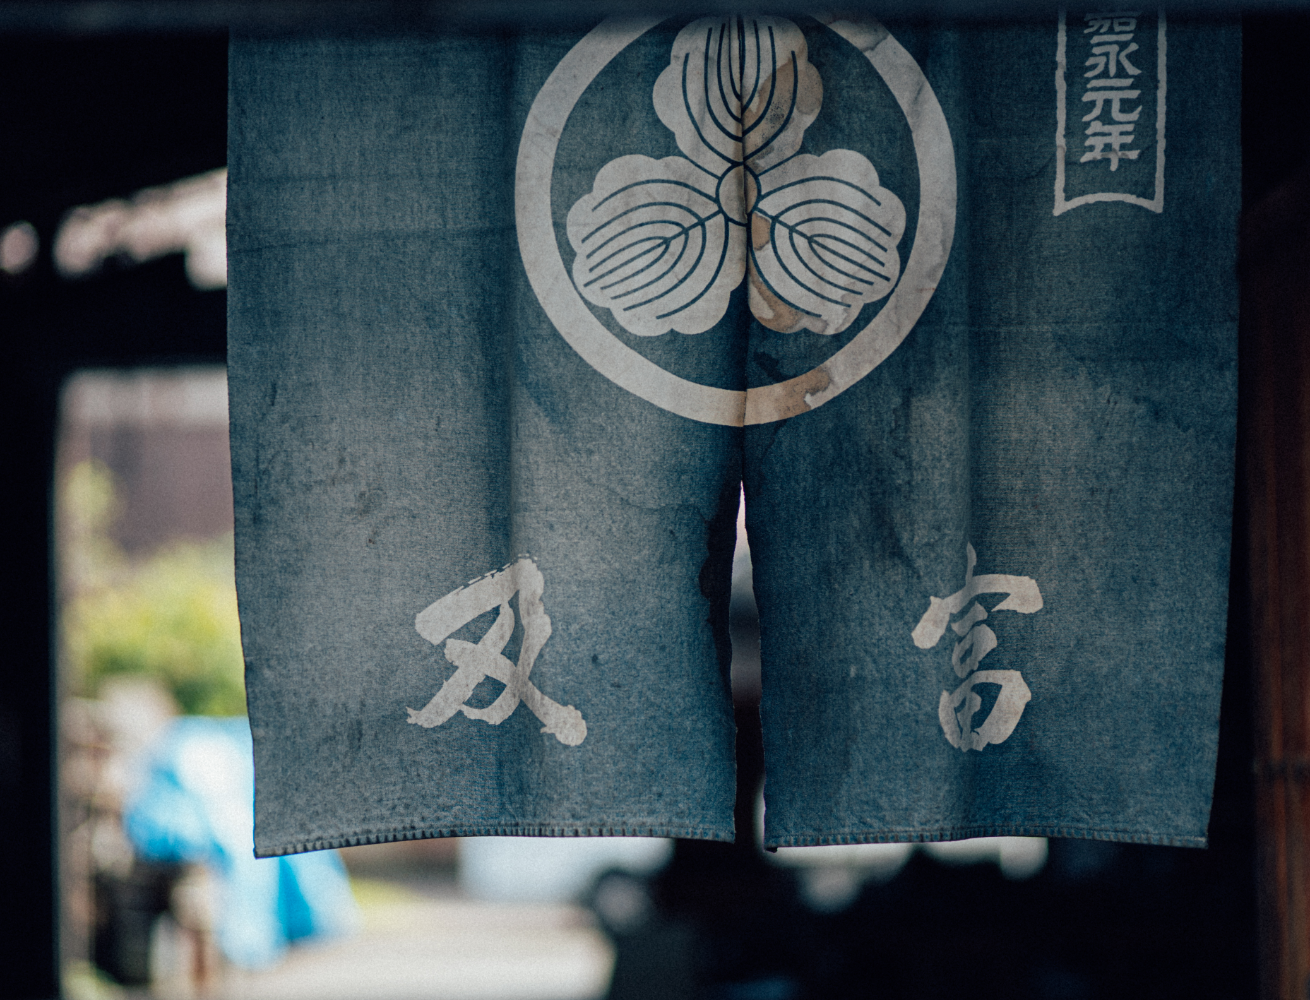 OITOMI正宗日本南部铁器-铁水壶-茶壶-鉄瓶(TEKKI,Tetsubin,Kettle)来自日本